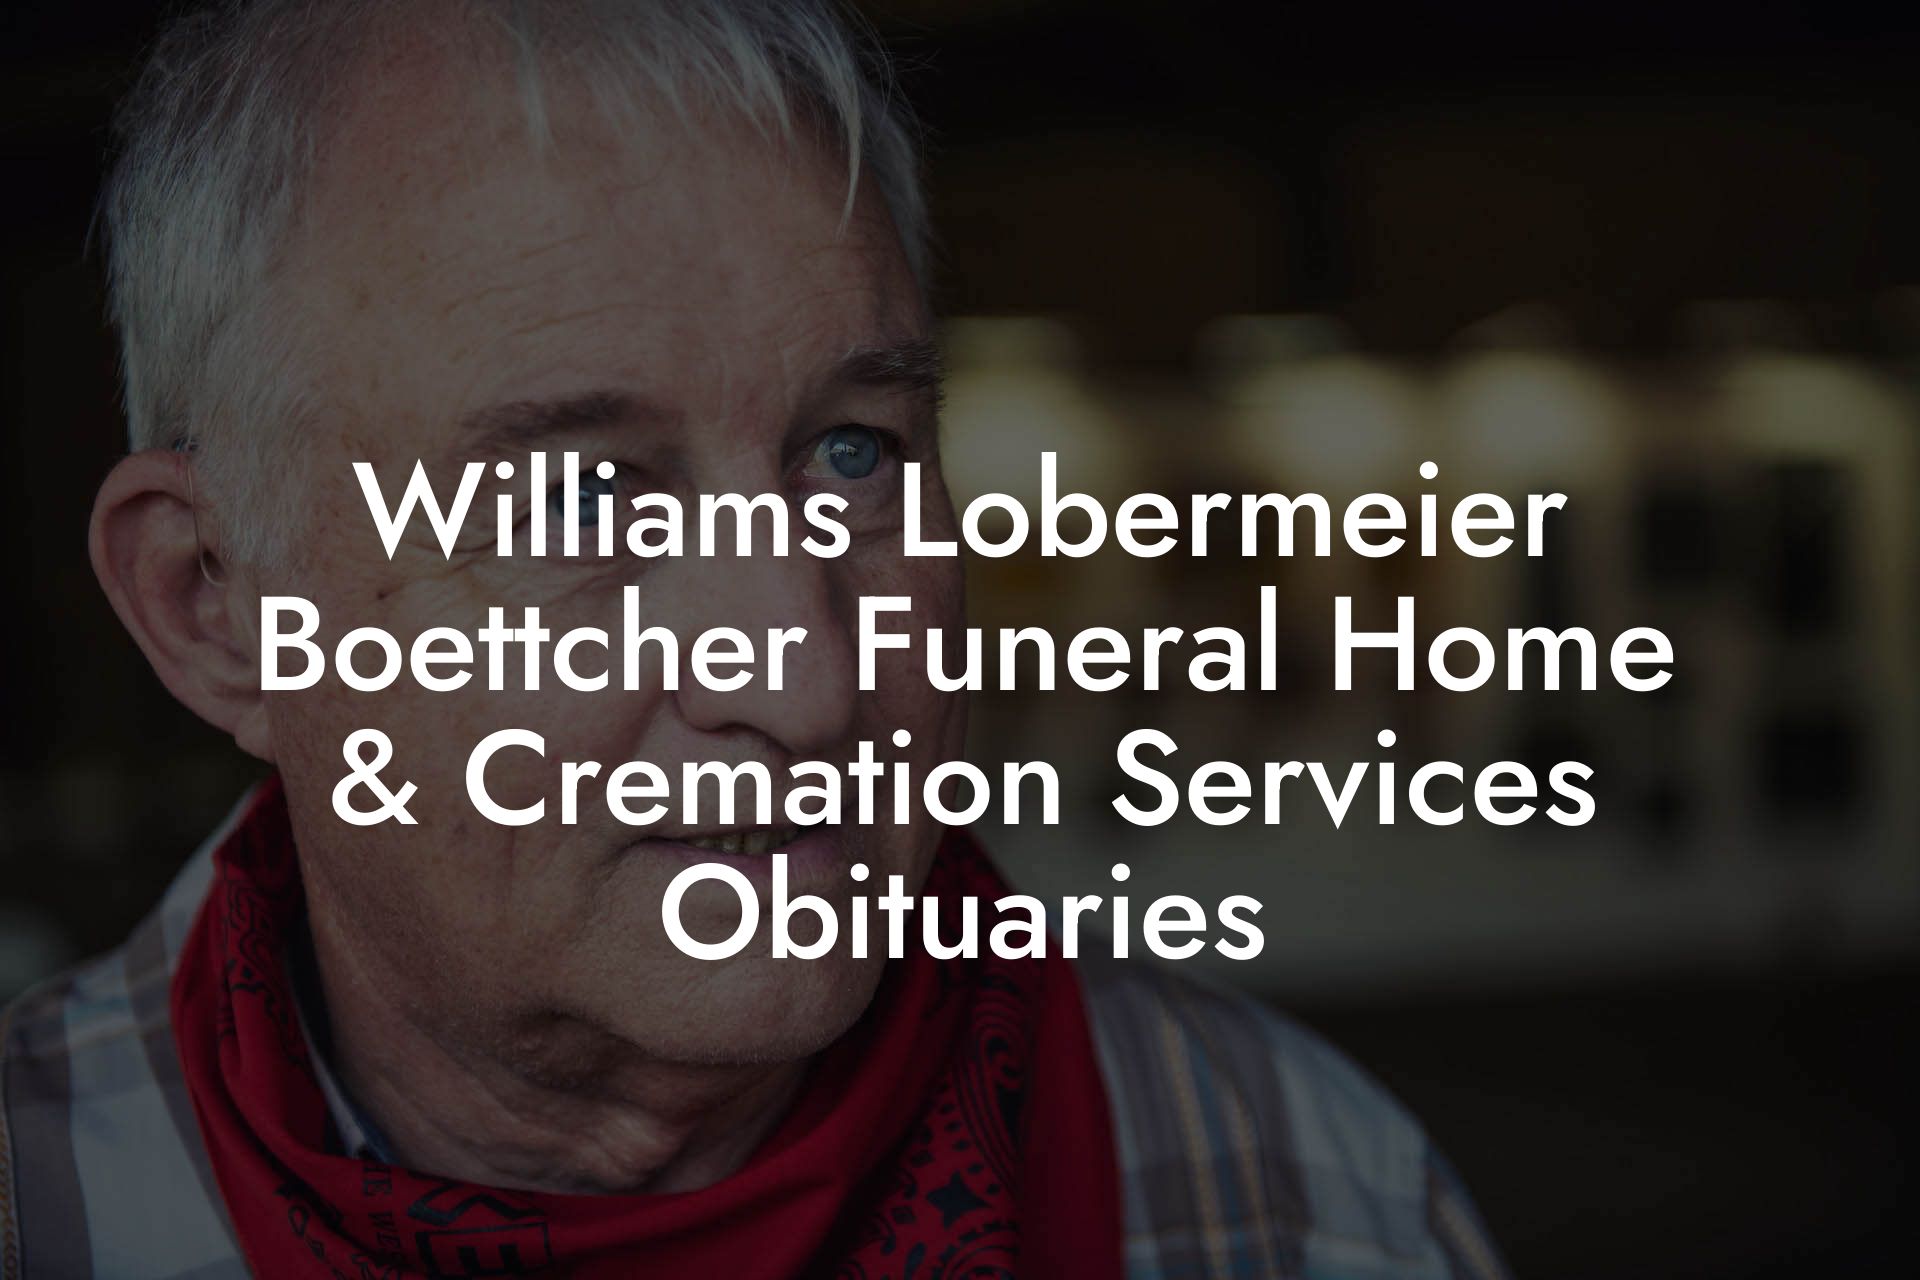 Williams Lobermeier Boettcher Funeral Home & Cremation Services Obituaries